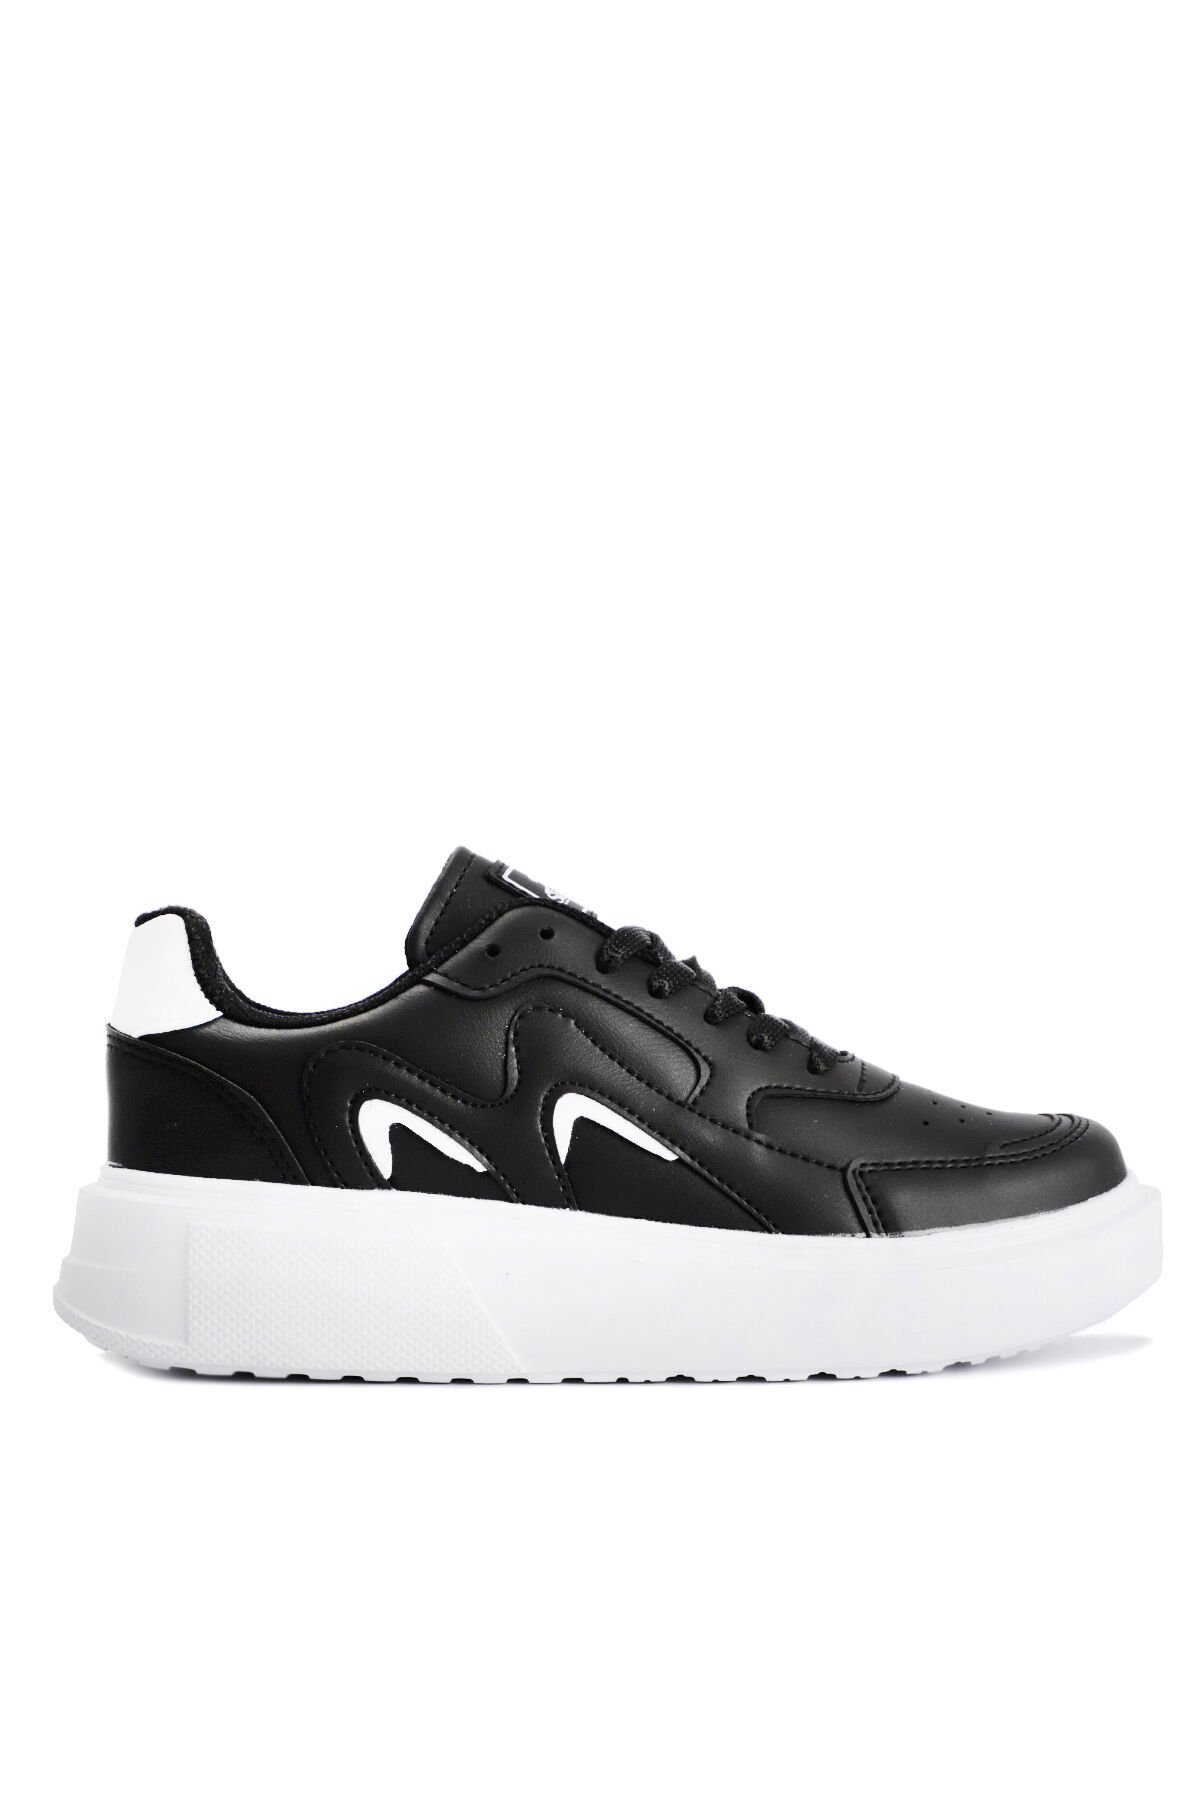 Slazenger ZENIA Sneaker Kadın Ayakkabı Siyah / Beyaz - Thumbnail